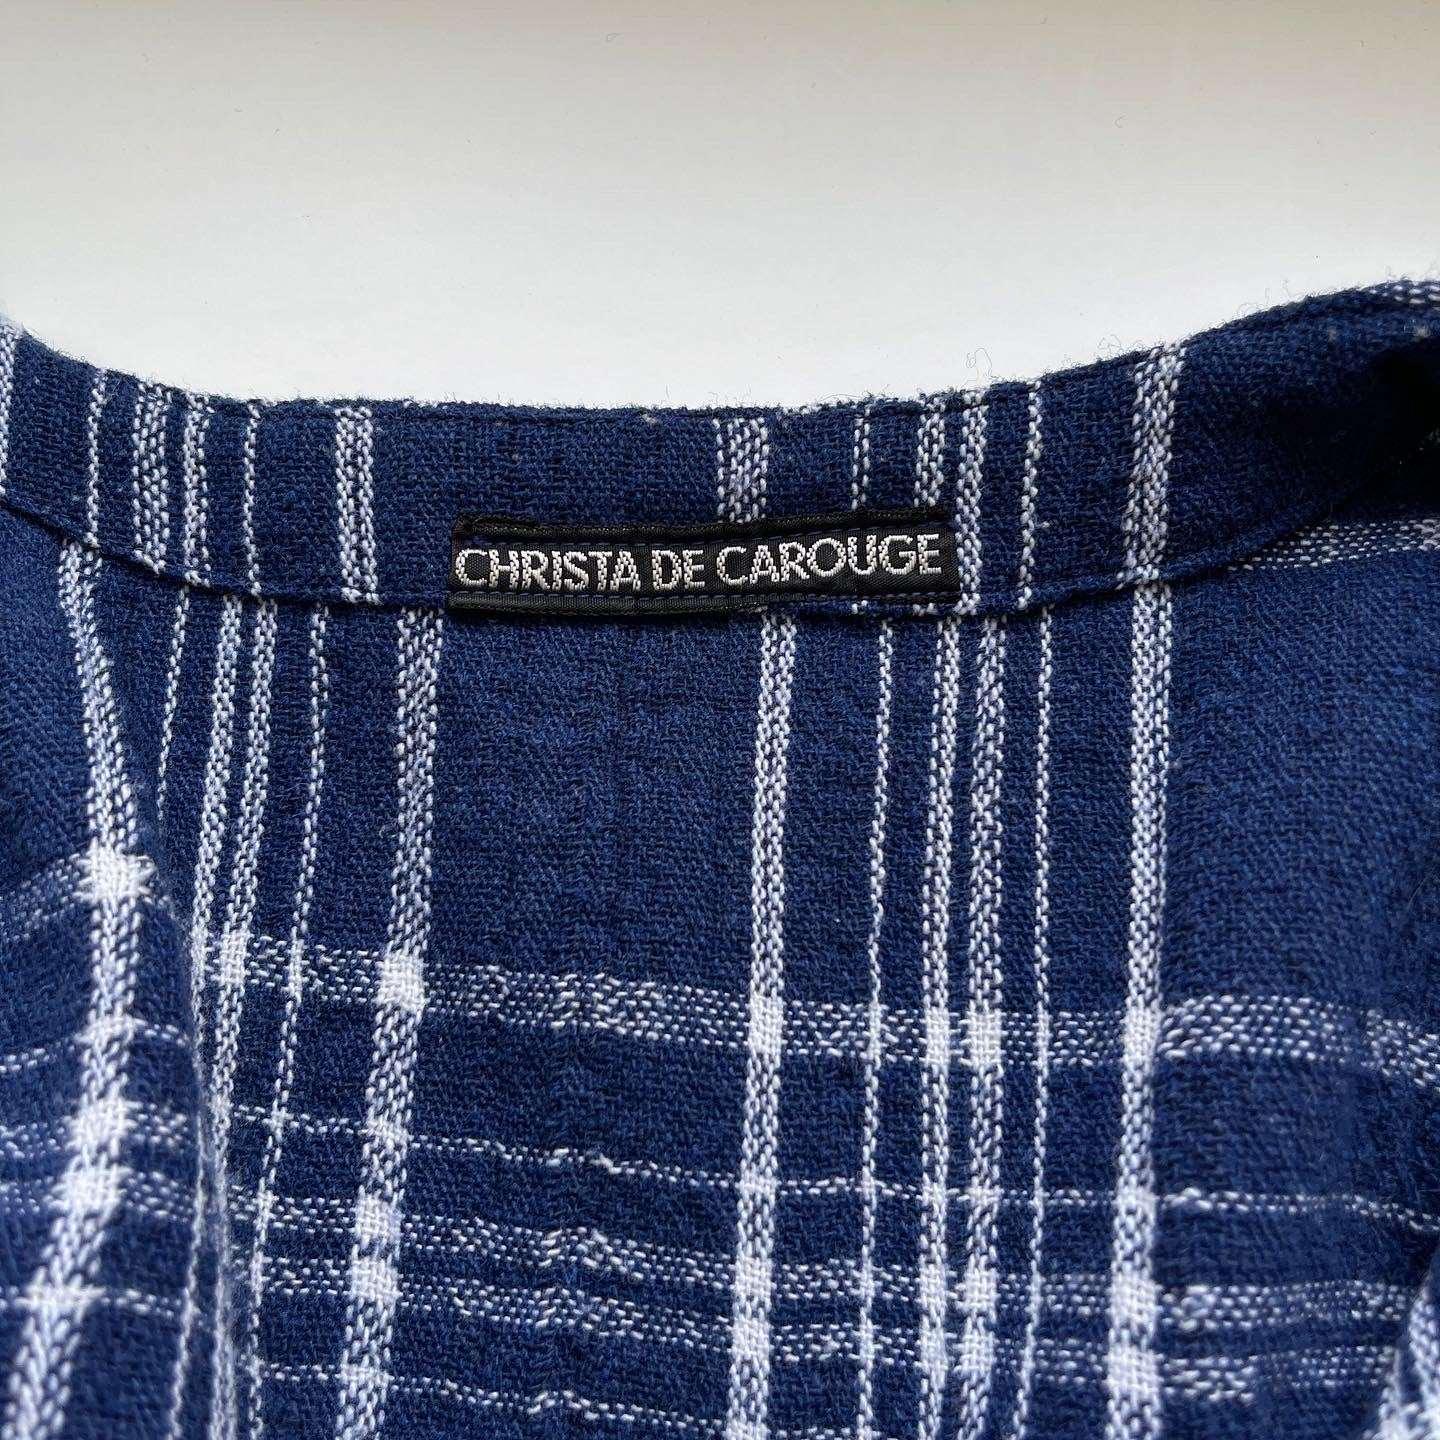 CHRISTA DE CAROUGE - CHRISTA DE CAROUGE Shirt - AVVIIVVA.COM